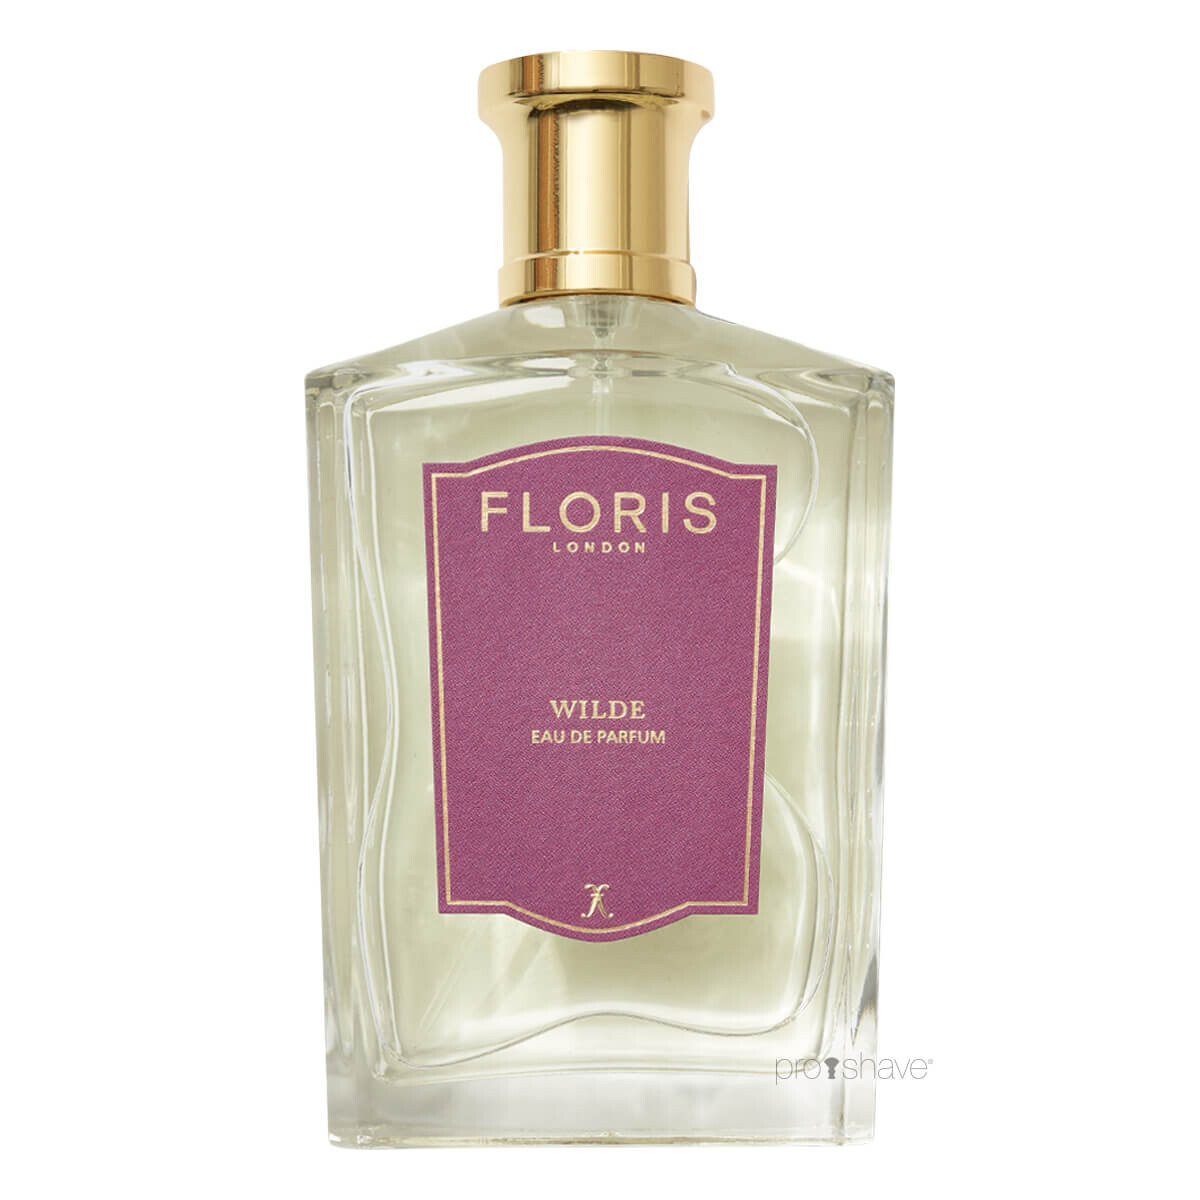 Se Floris Wilde, Eau de Parfum, 100 ml. hos Proshave